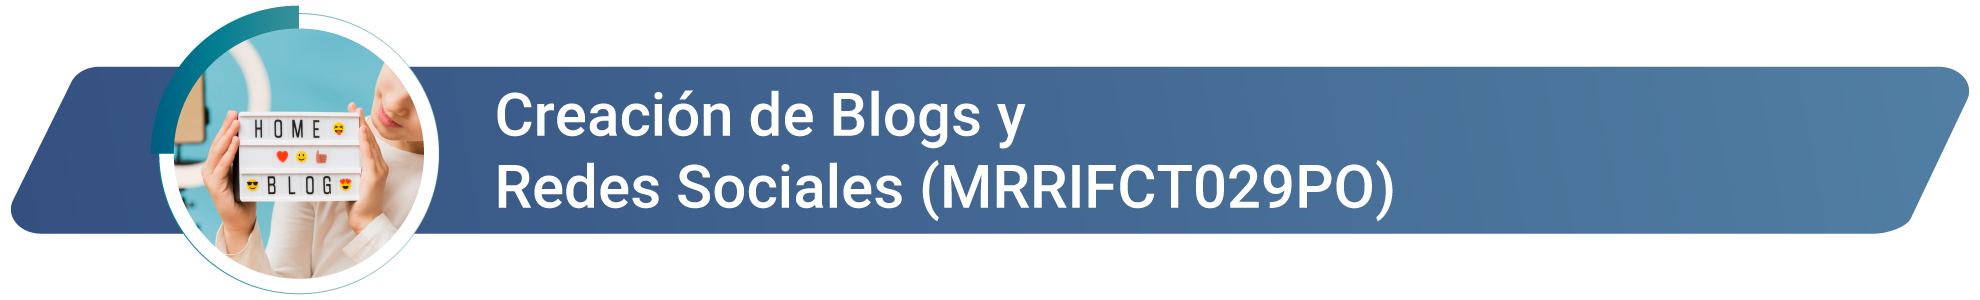 MRRIFCT029PO - Creación de Blogs y Redes Sociales